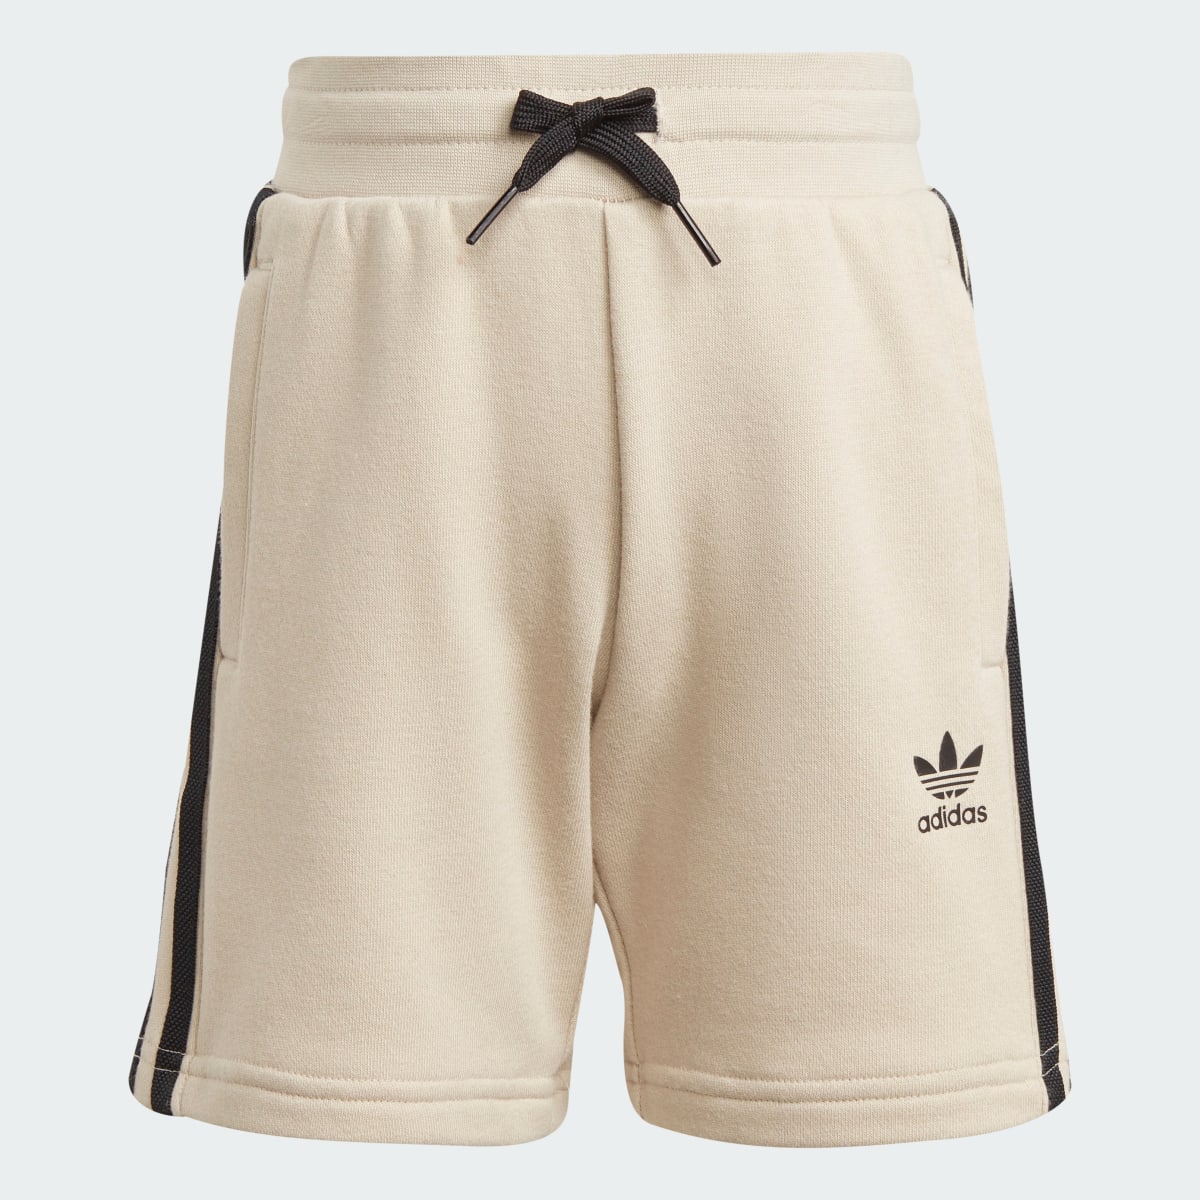 Adidas Adicolor Shorts and Tee Set. 5